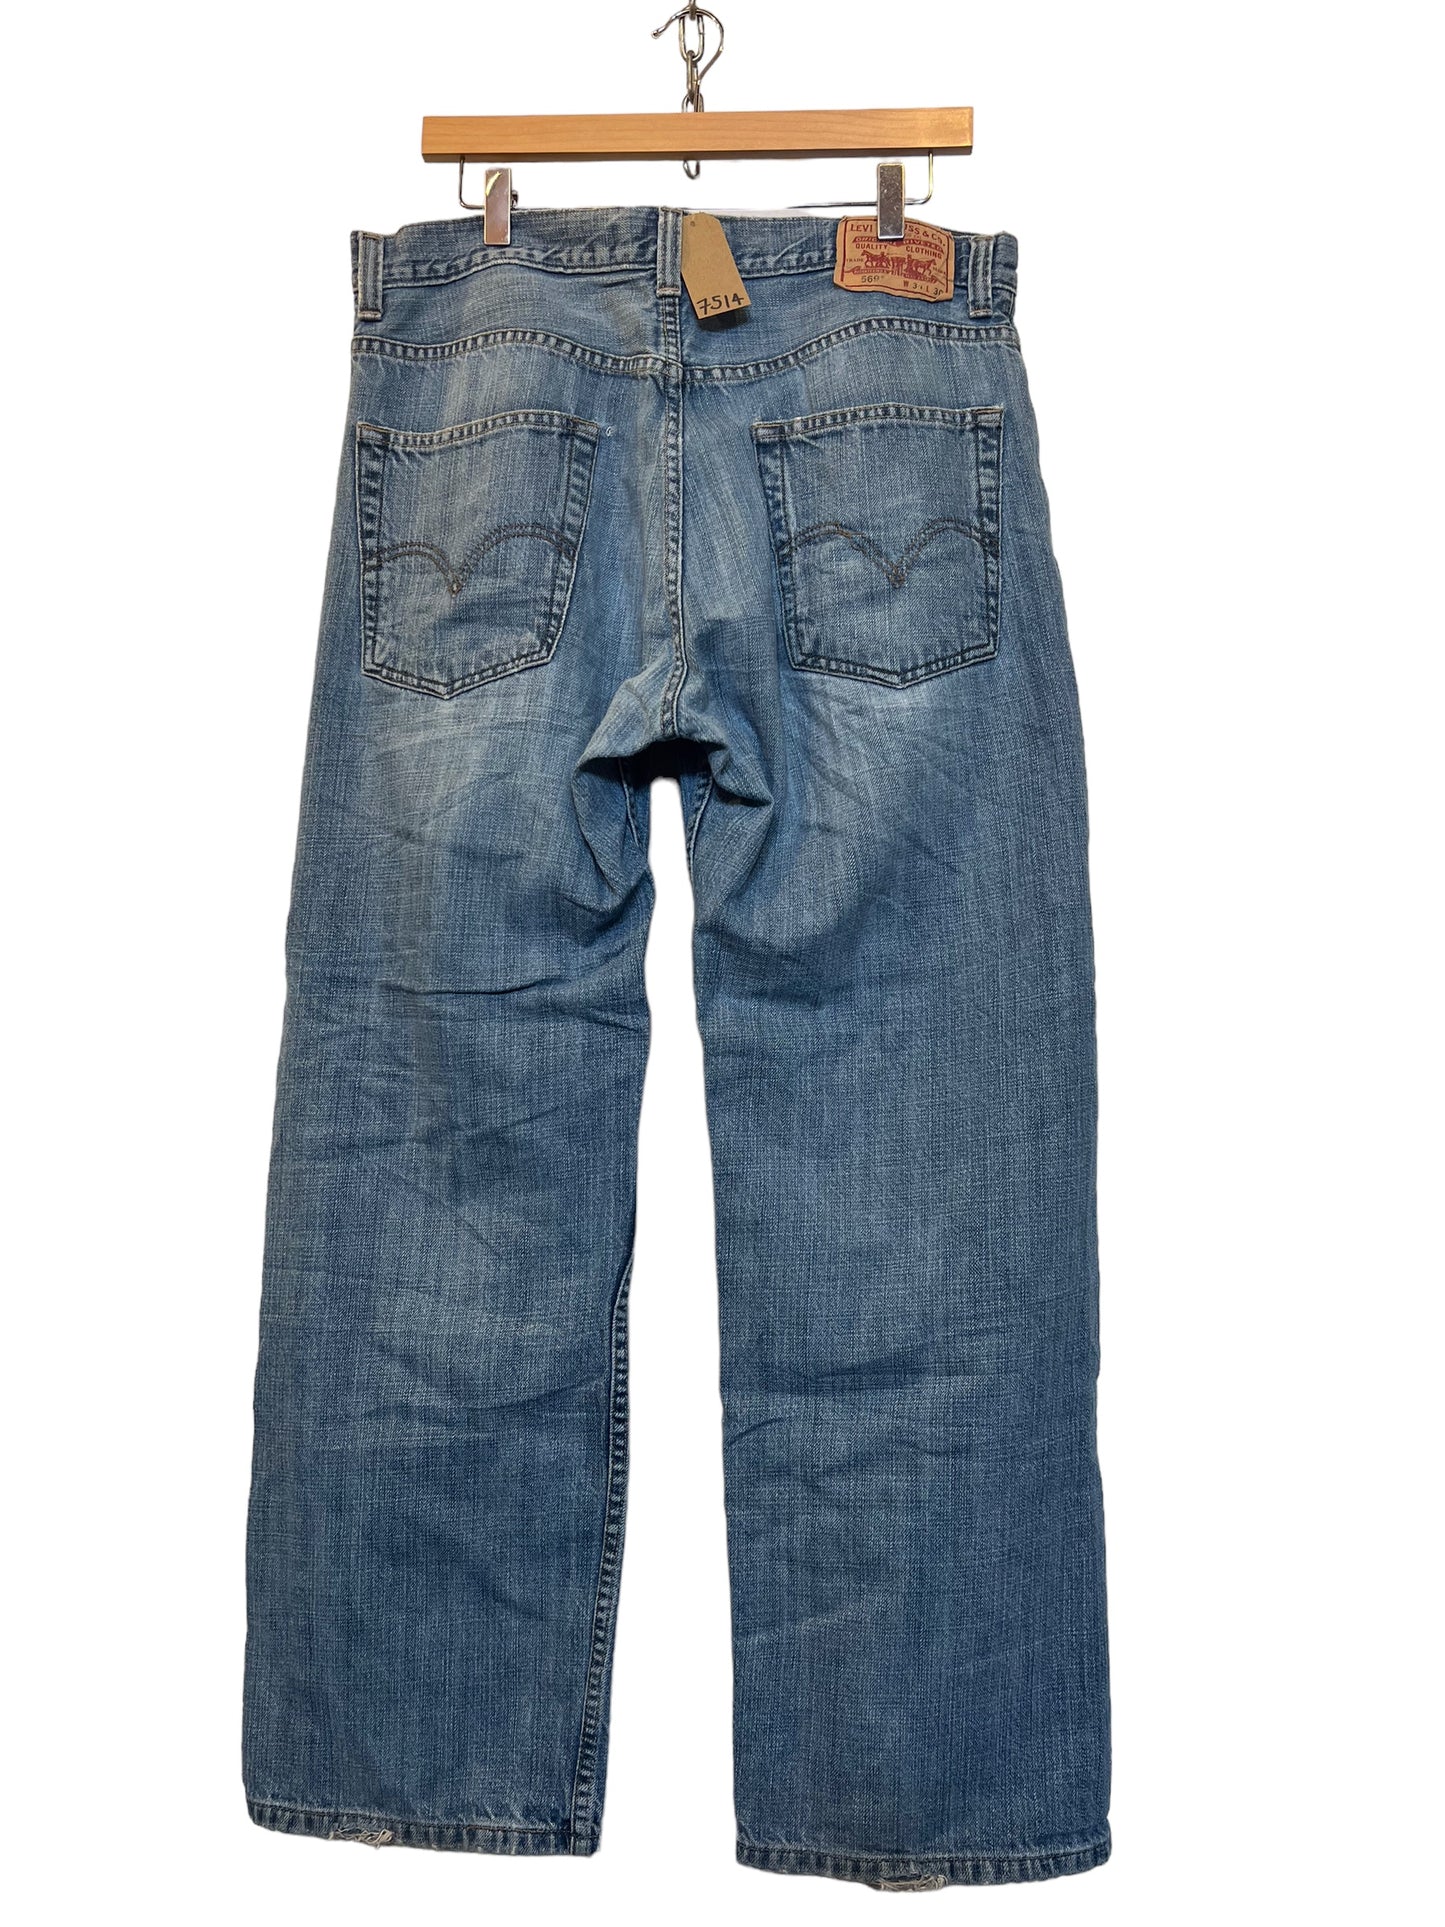 Levi 569 jeans (34x30)